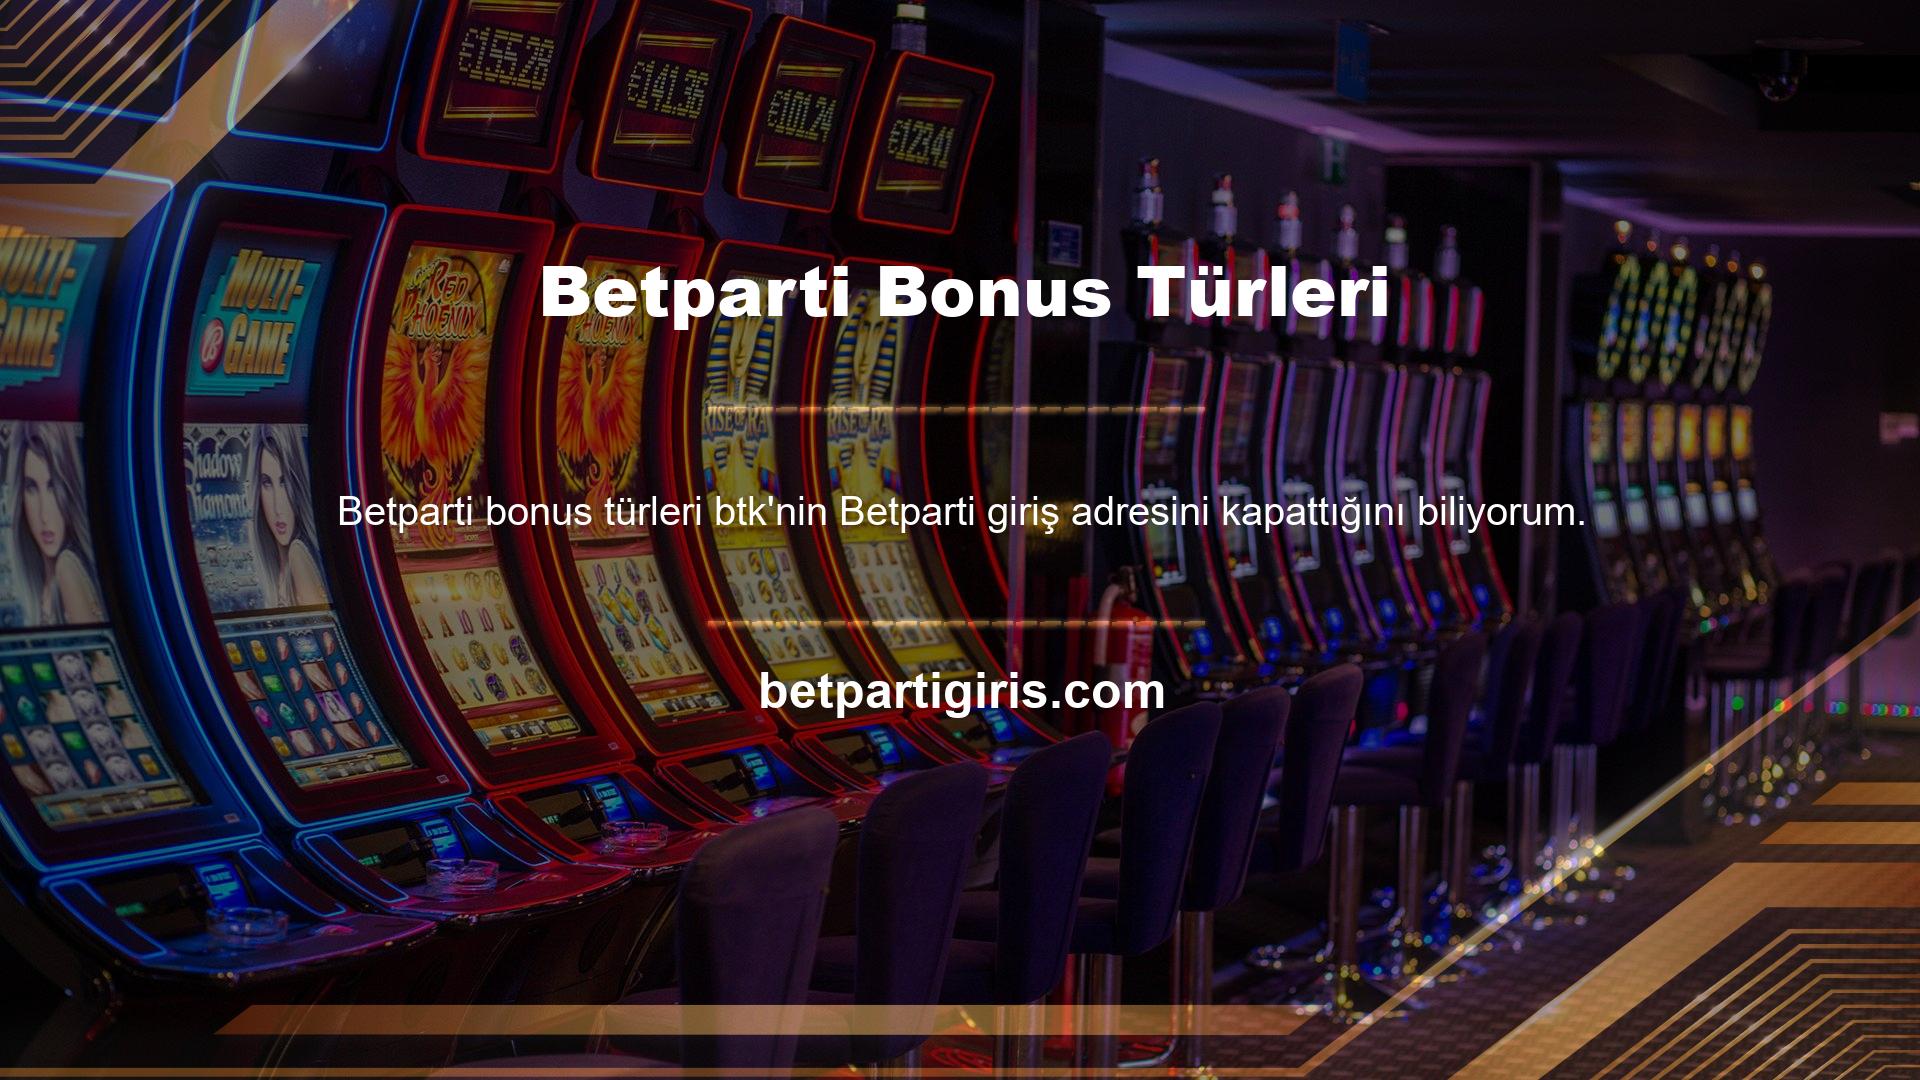 Çevrimiçi casino benzer şekilde Btk, kayıtlı bir adres gerektirmez ve birçok avantaj sunar